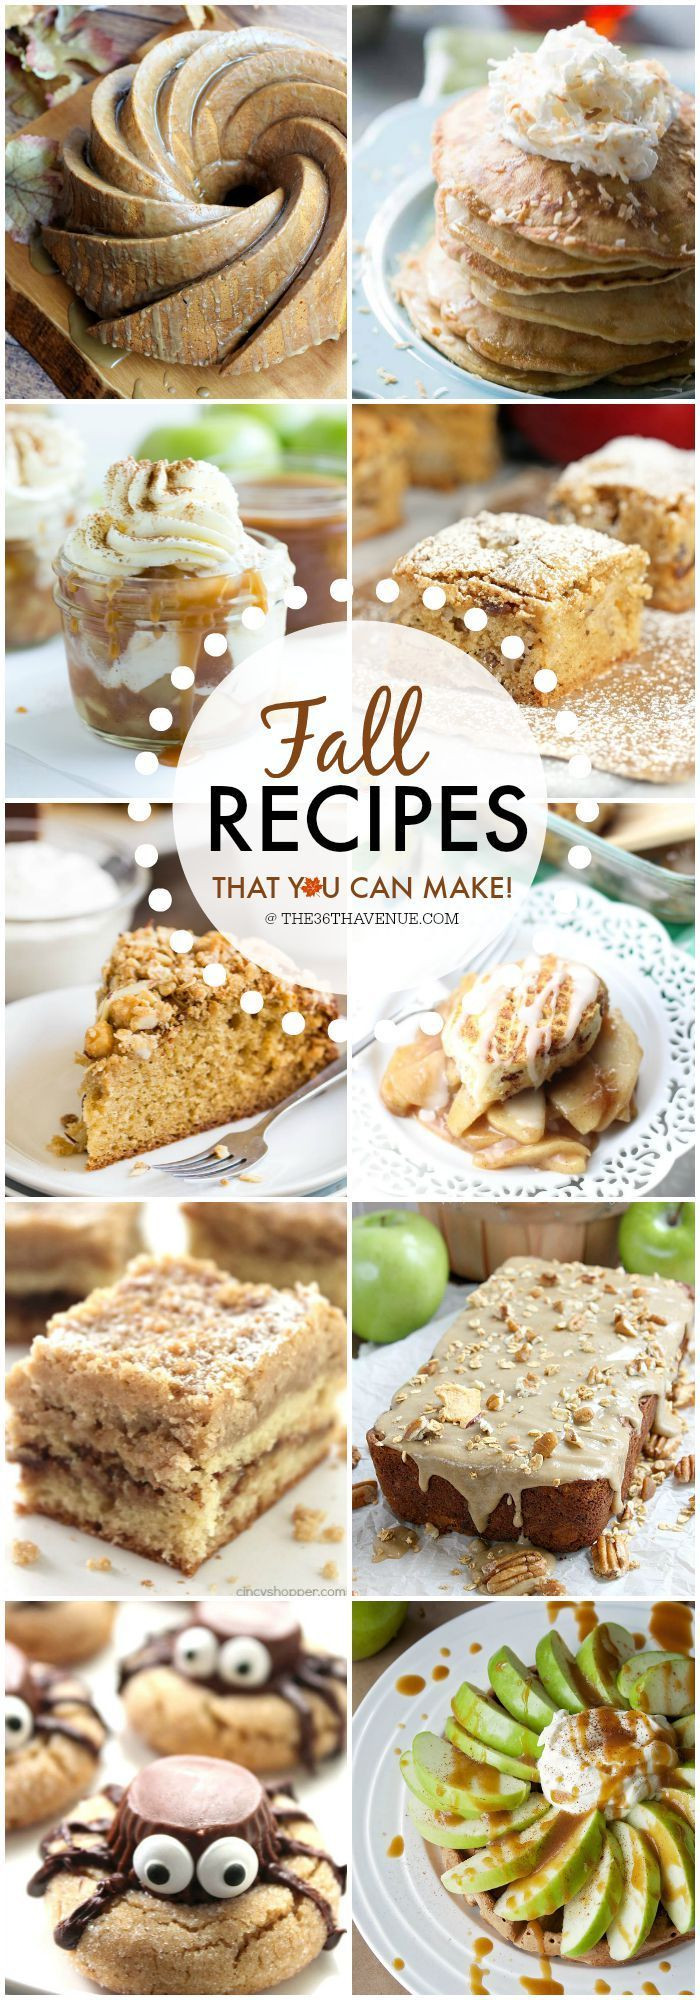 Fun Fall Desserts
 Fall Recipes Desserts and Treats